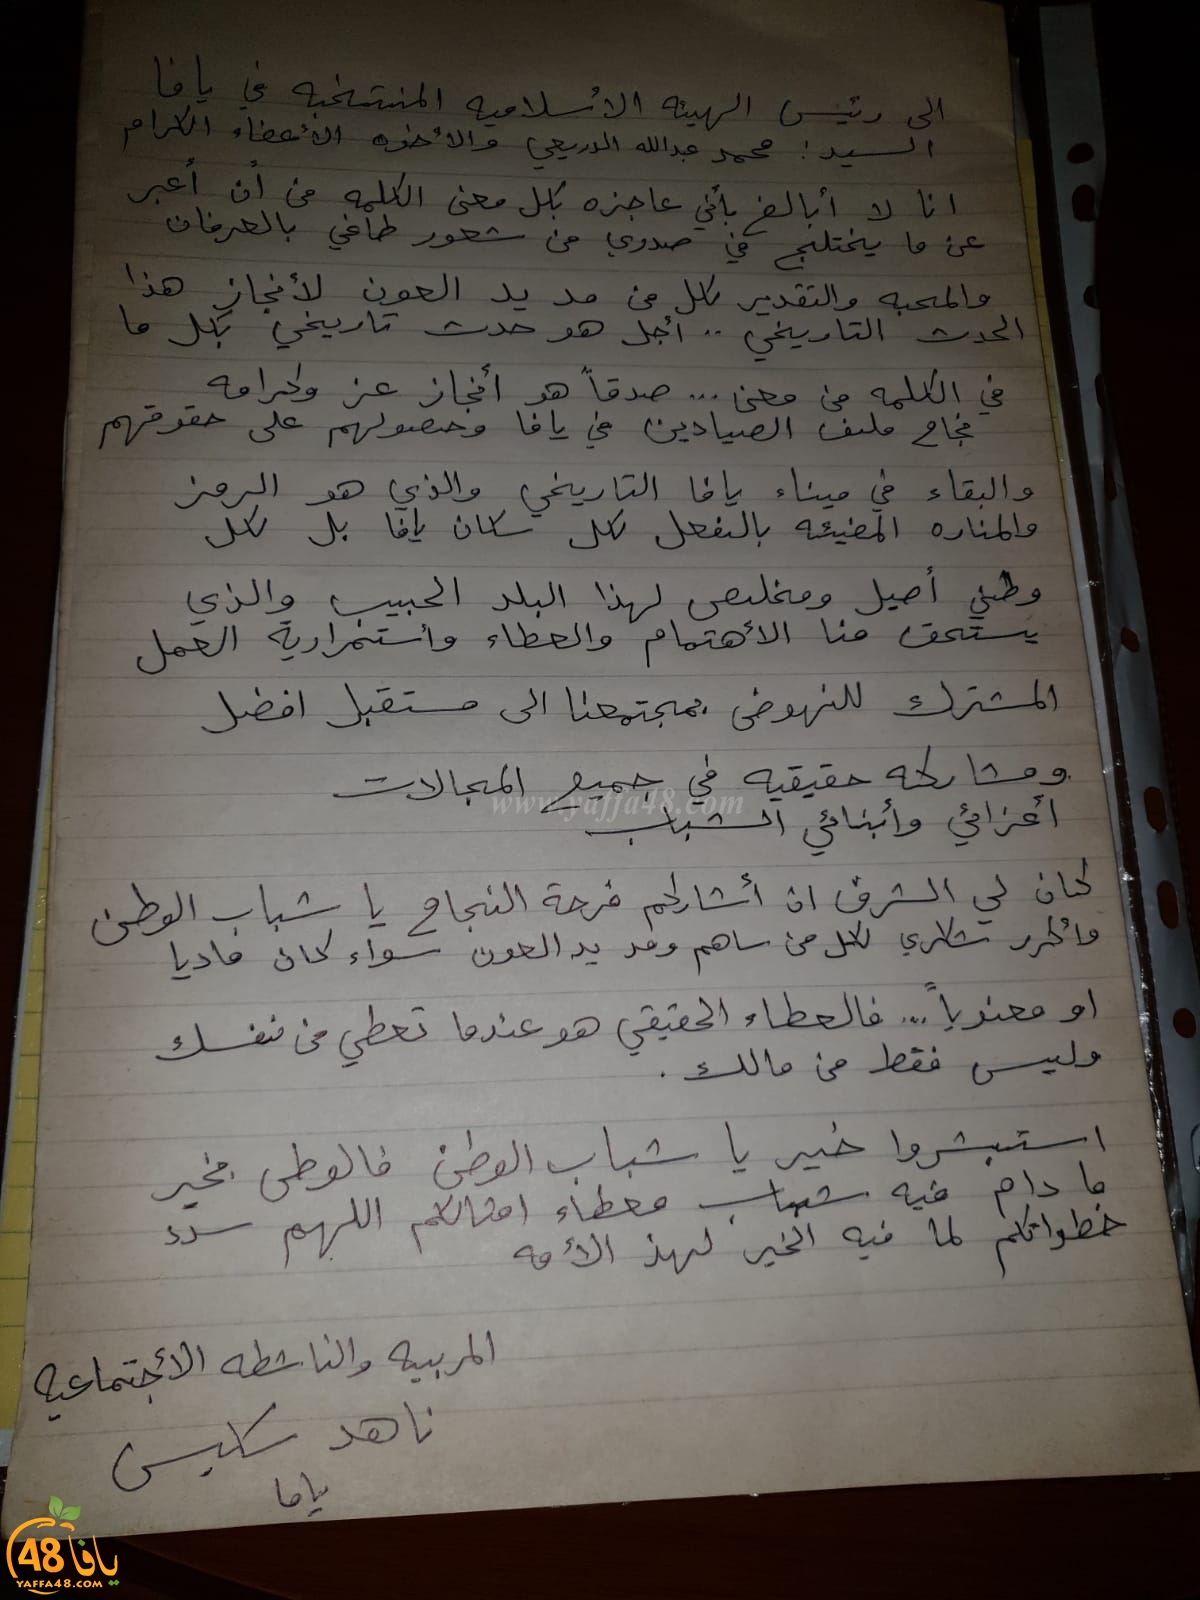  رسالة شكر من المربية ناهدة سكيس إلى الهيئة الاسلامية بيافا ورئيسها